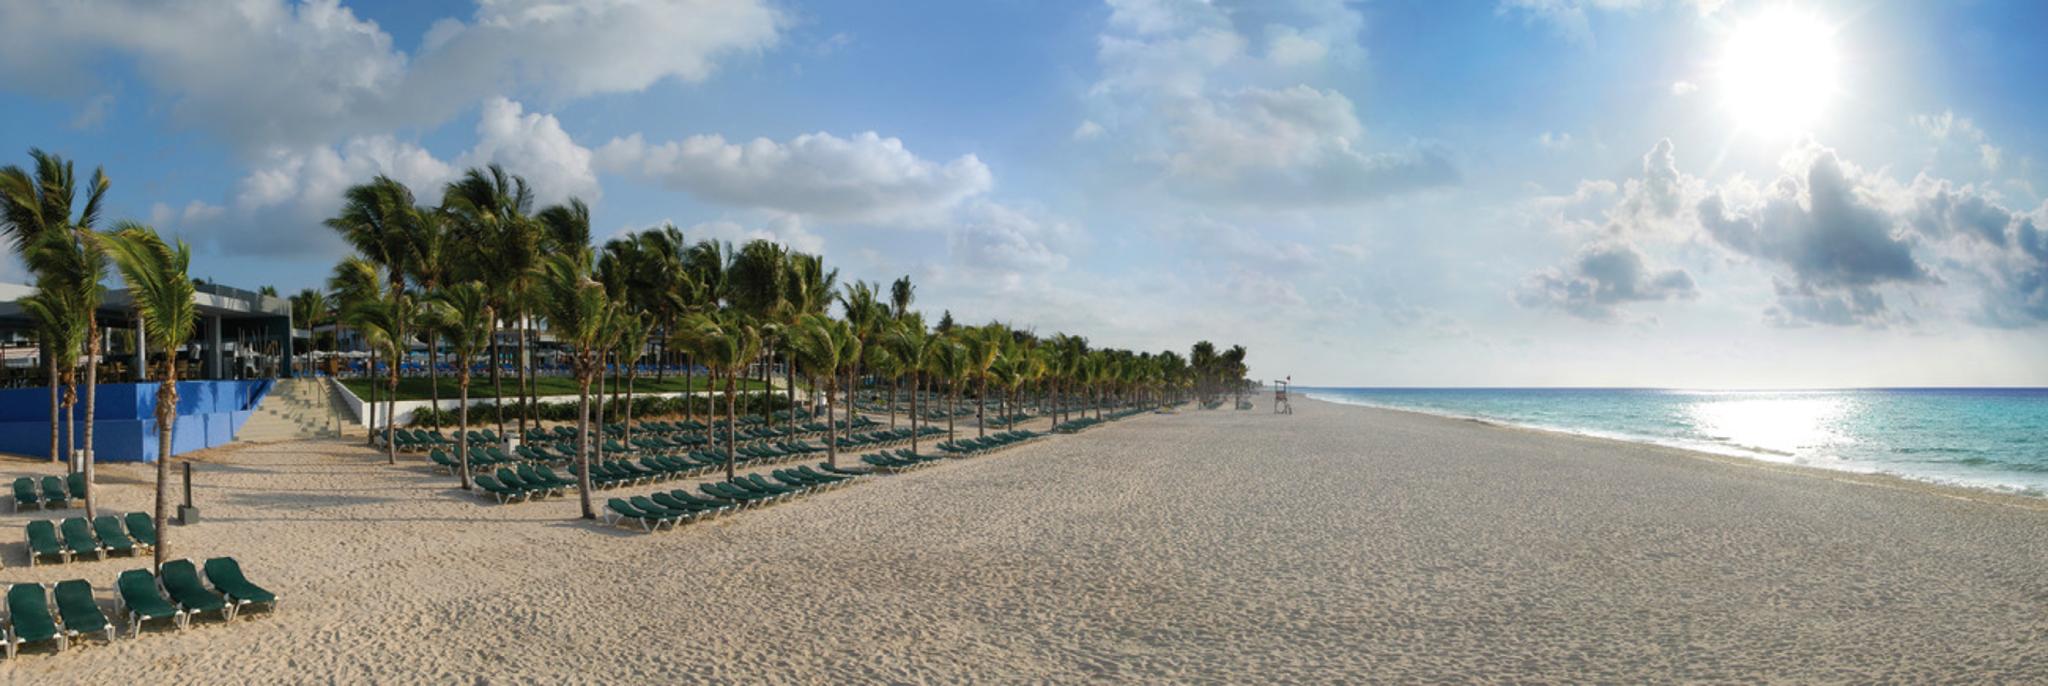 RIU Yucatan